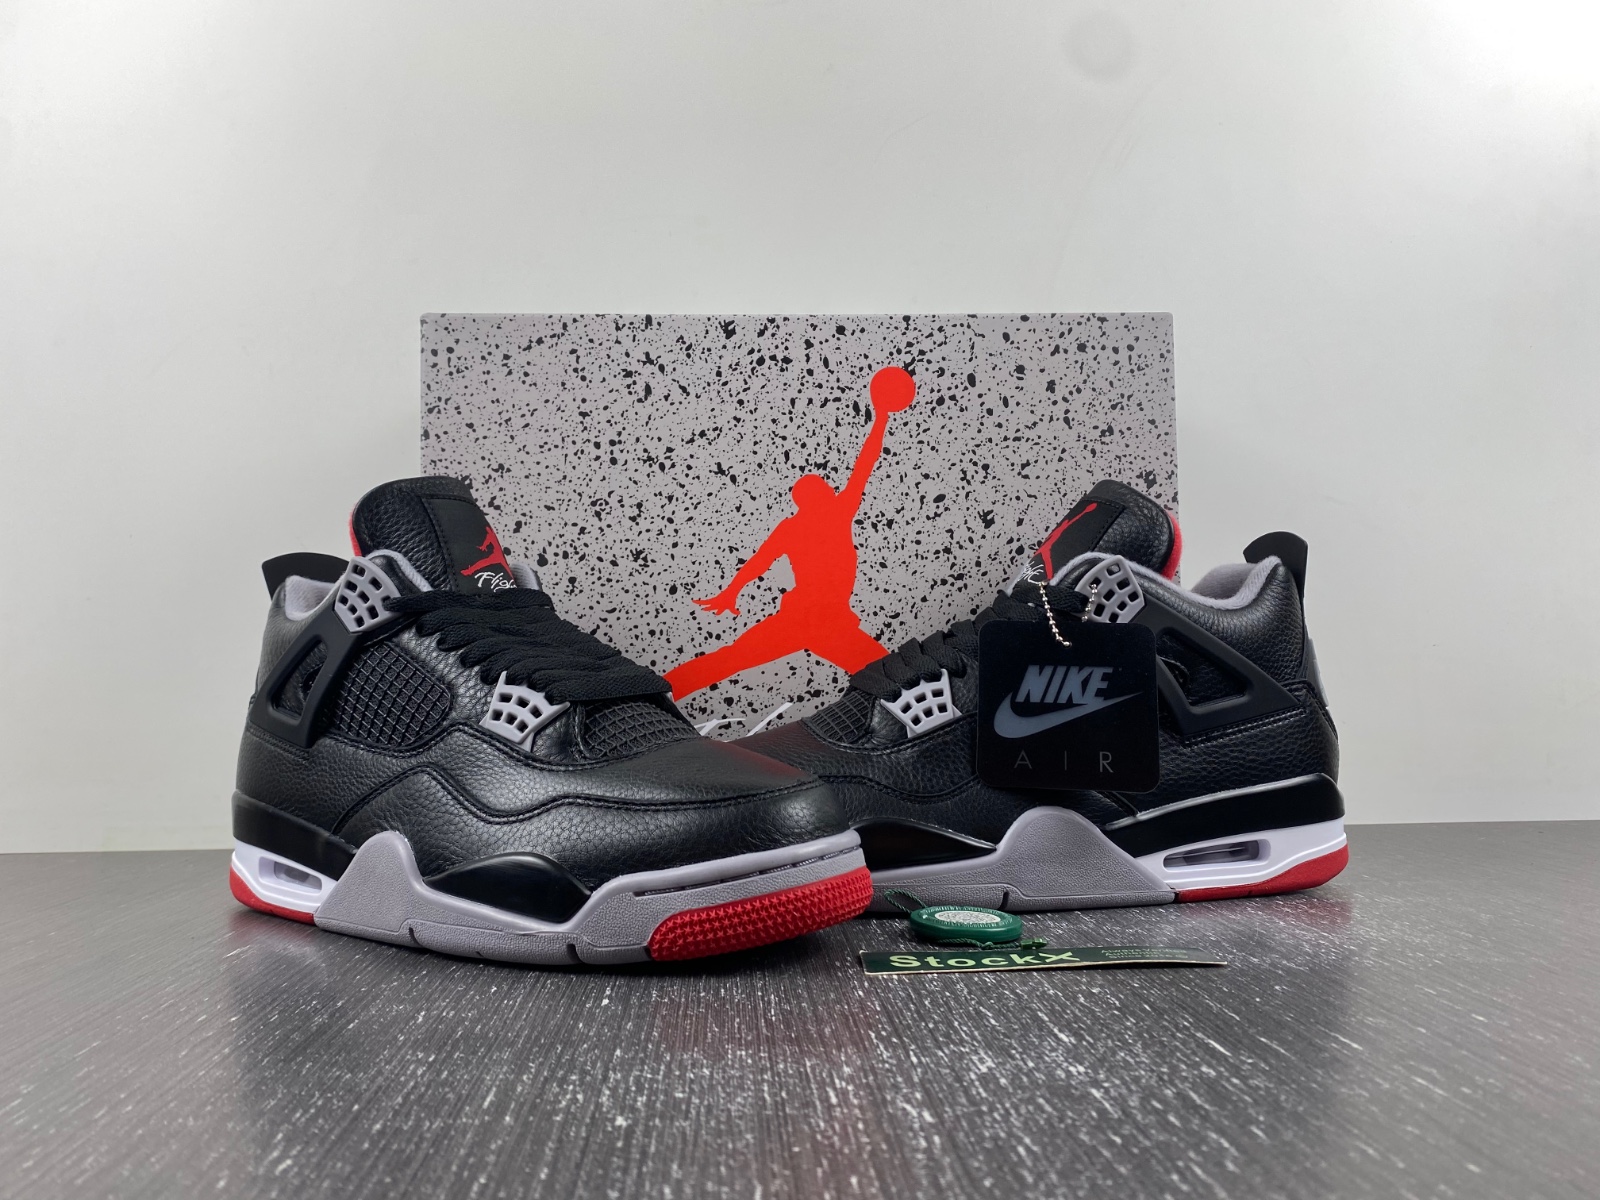 Air Jordan 4 “Bred Reimagined”